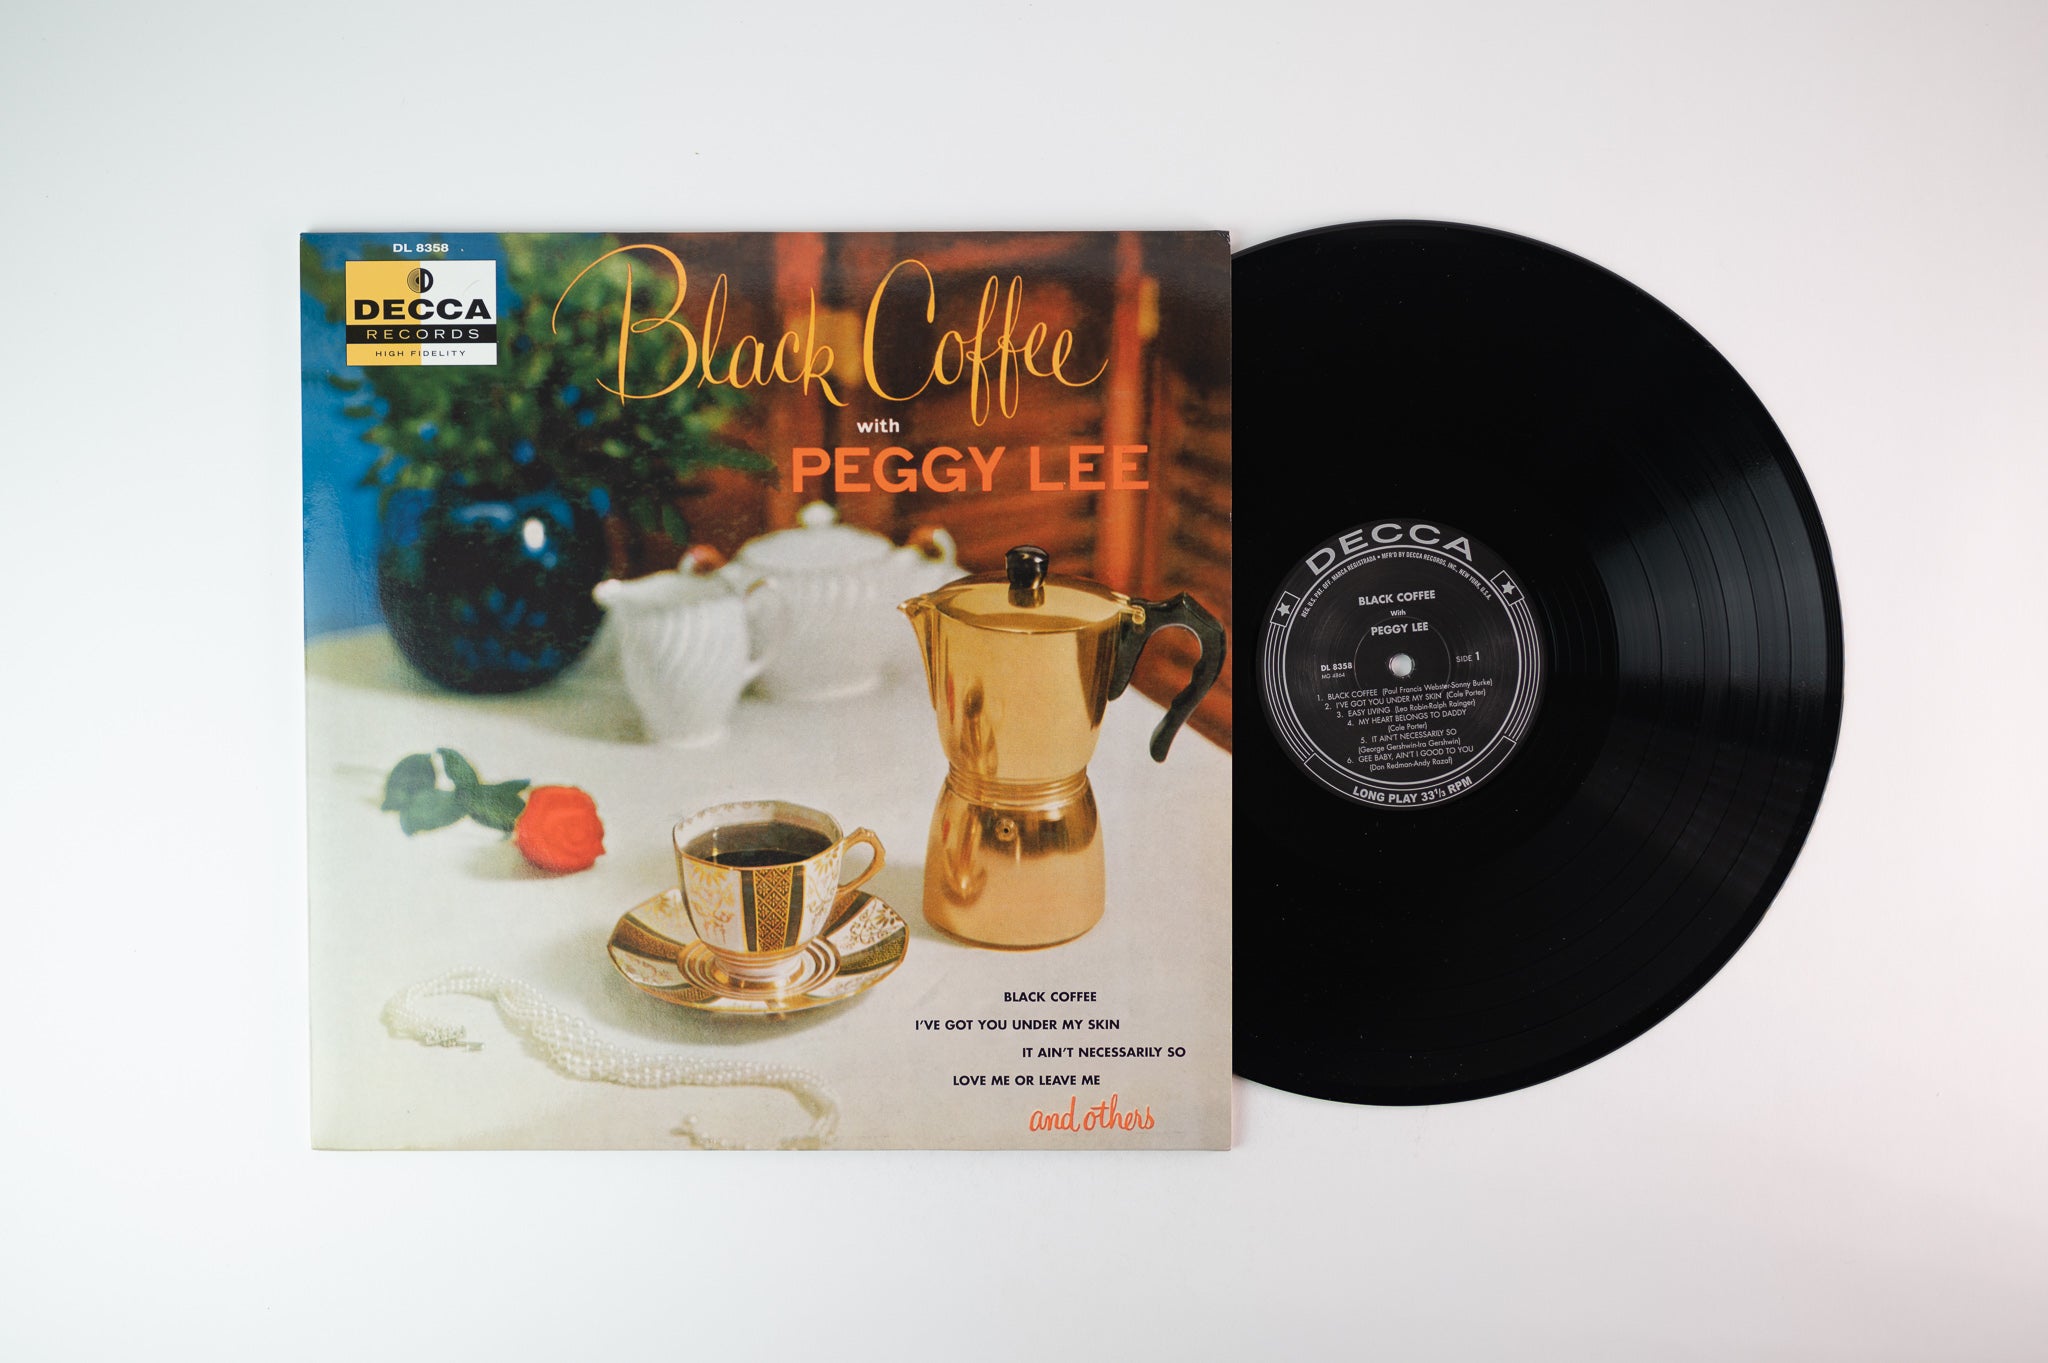 Peggy Lee - Black Coffee on Decca Speakers Corner German Audiophile Reissue